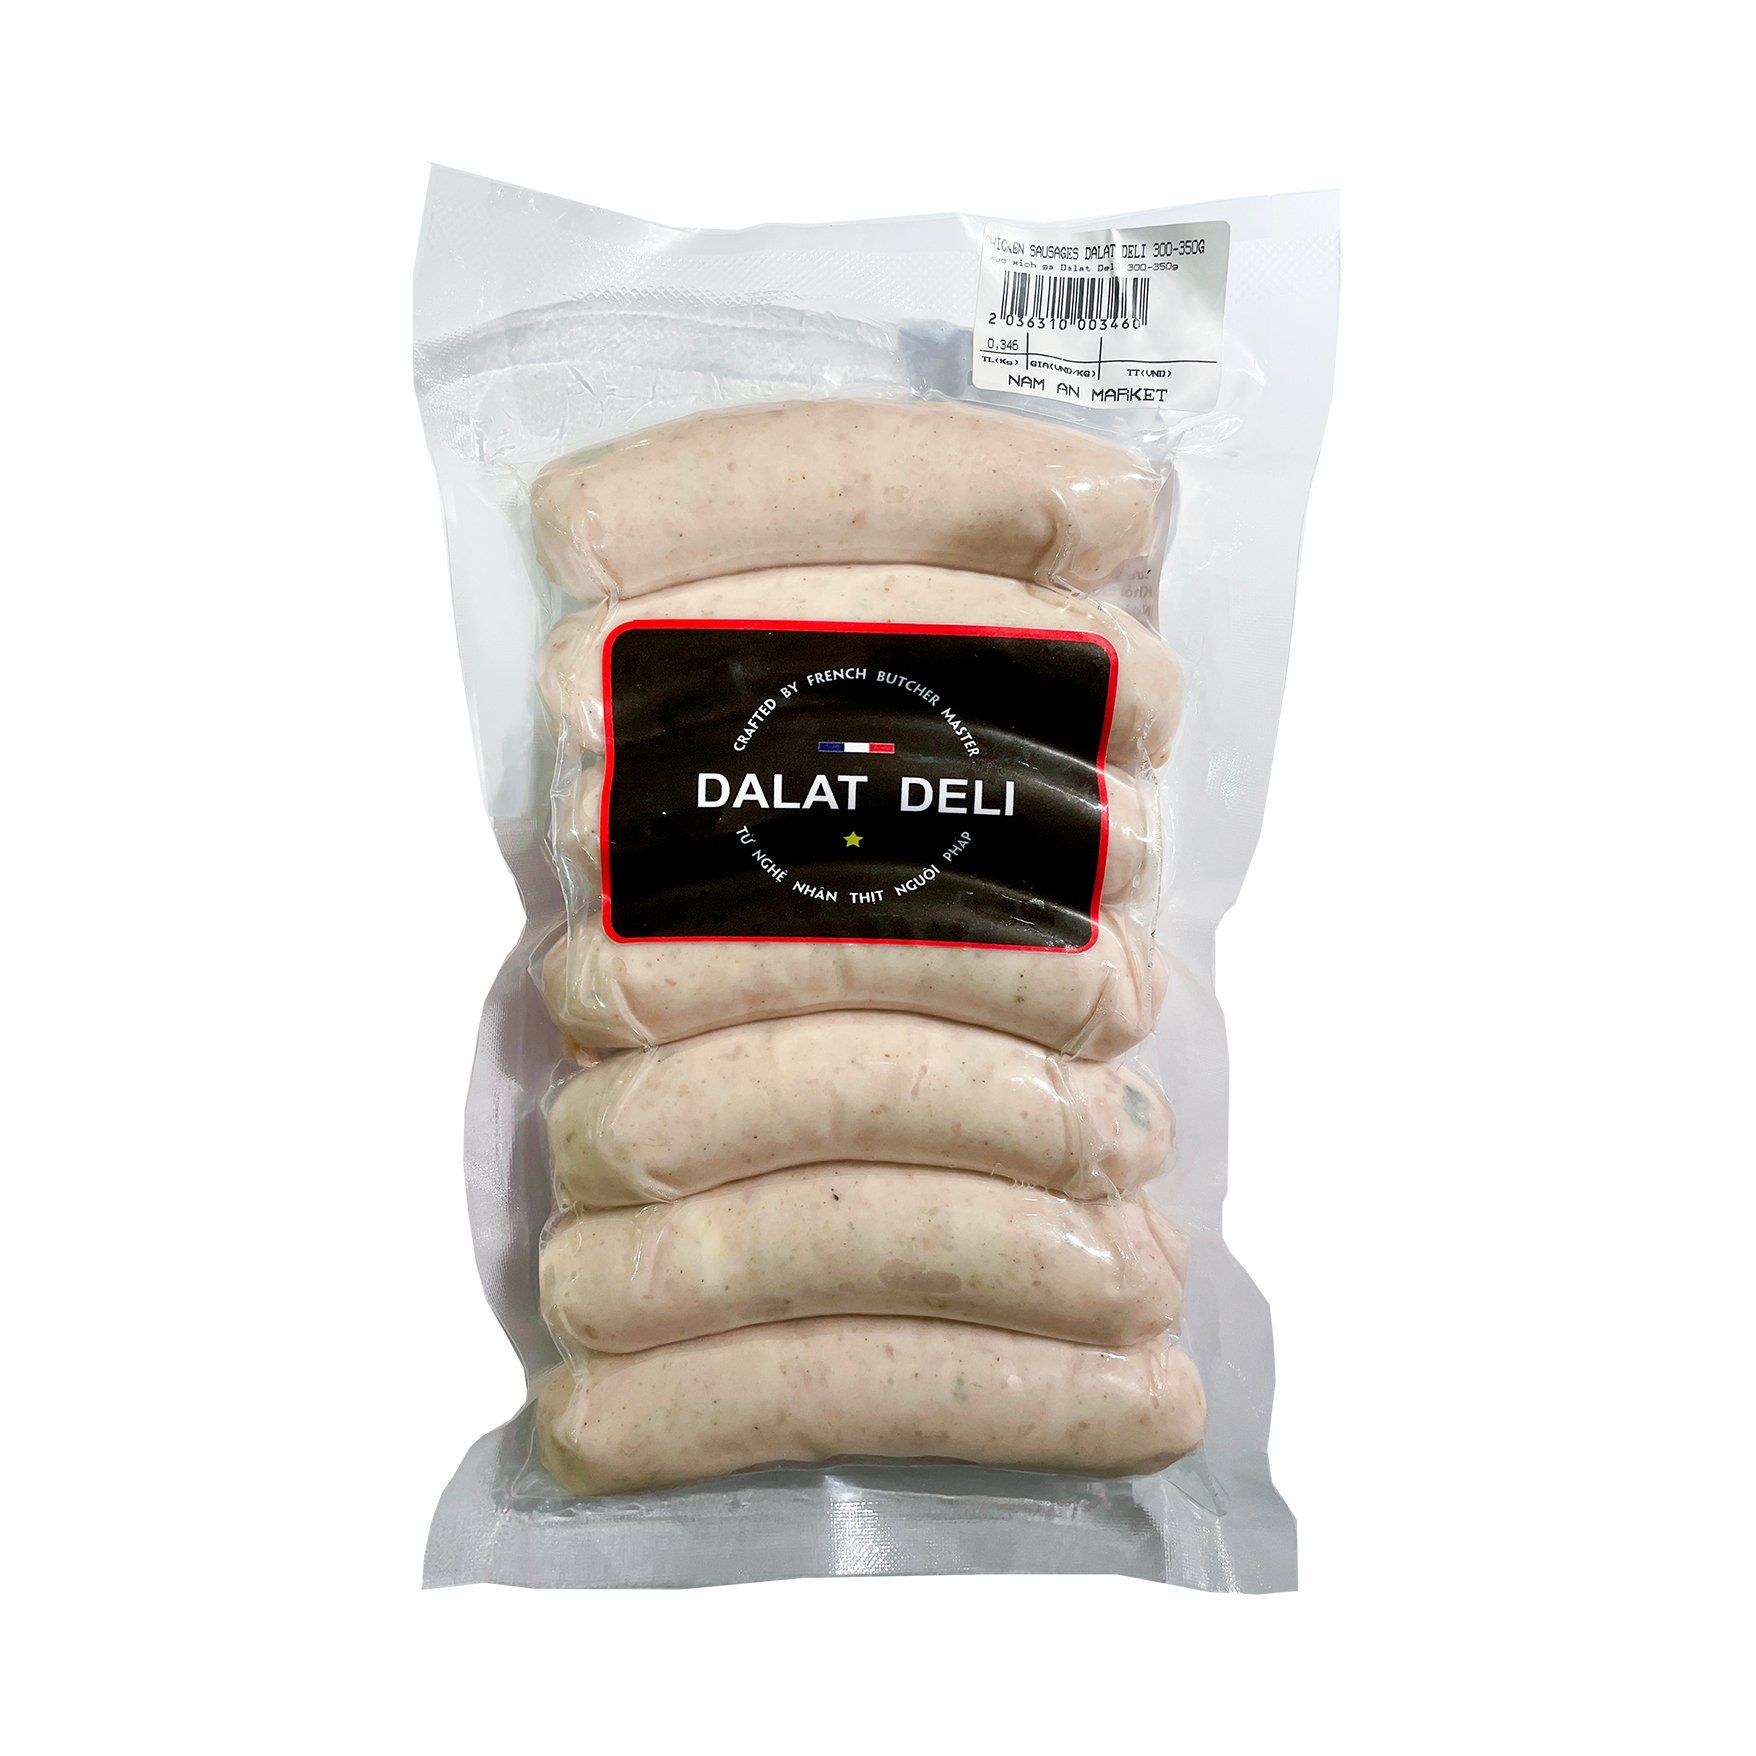 Chicken Sausage For Grill Dalat Deli 300G- 